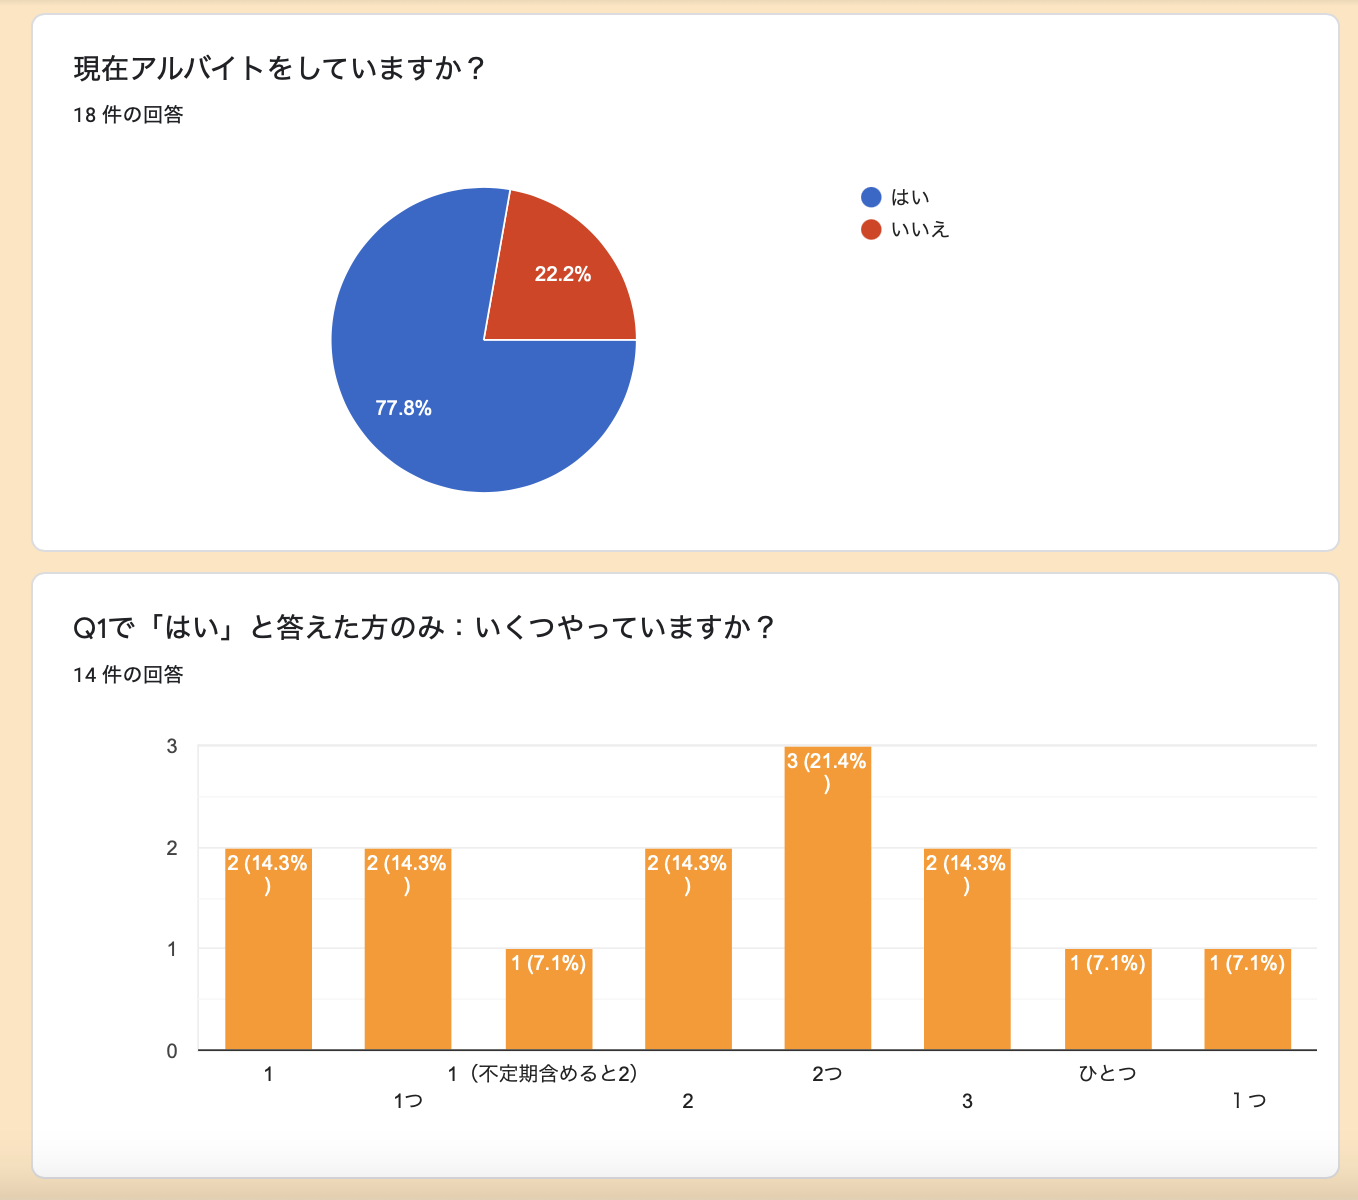 http://ud.t.u-tokyo.ac.jp/blog/_images/%E3%82%B9%E3%82%AF%E3%83%AA%E3%83%BC%E3%83%B3%E3%82%B7%E3%83%A7%E3%83%83%E3%83%88%202021-07-03%200.25.12.png